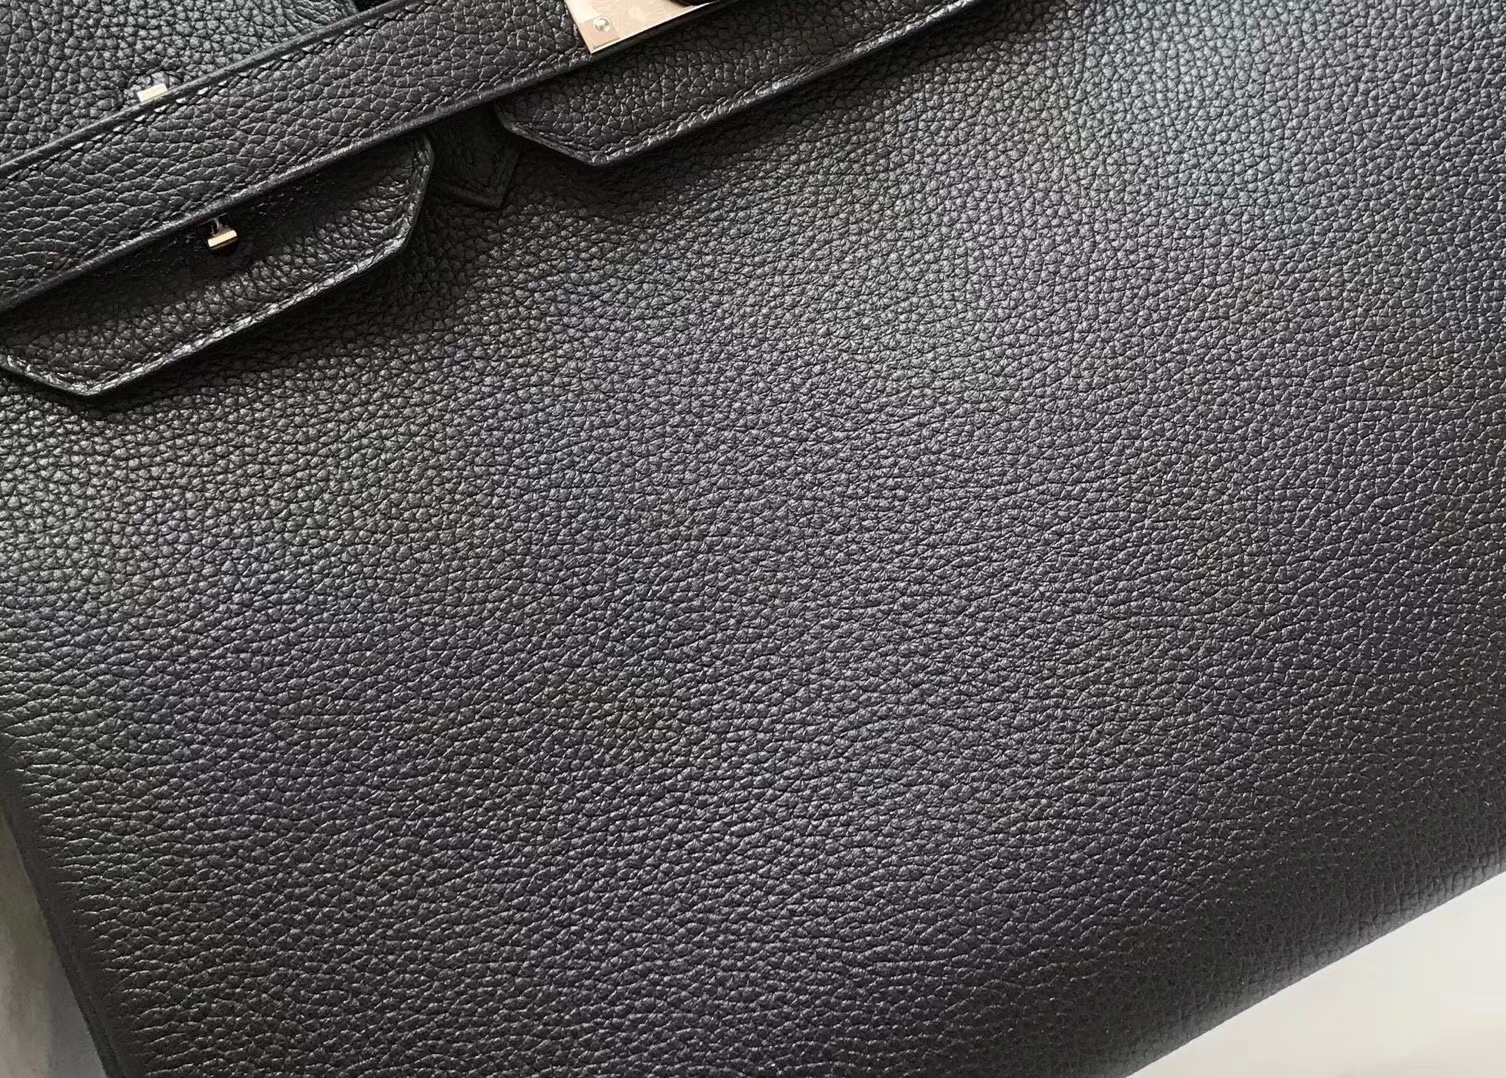 New Hermes CK89 Black Evecolor Calf Leather Birkin25cm Bag Silver Hardware